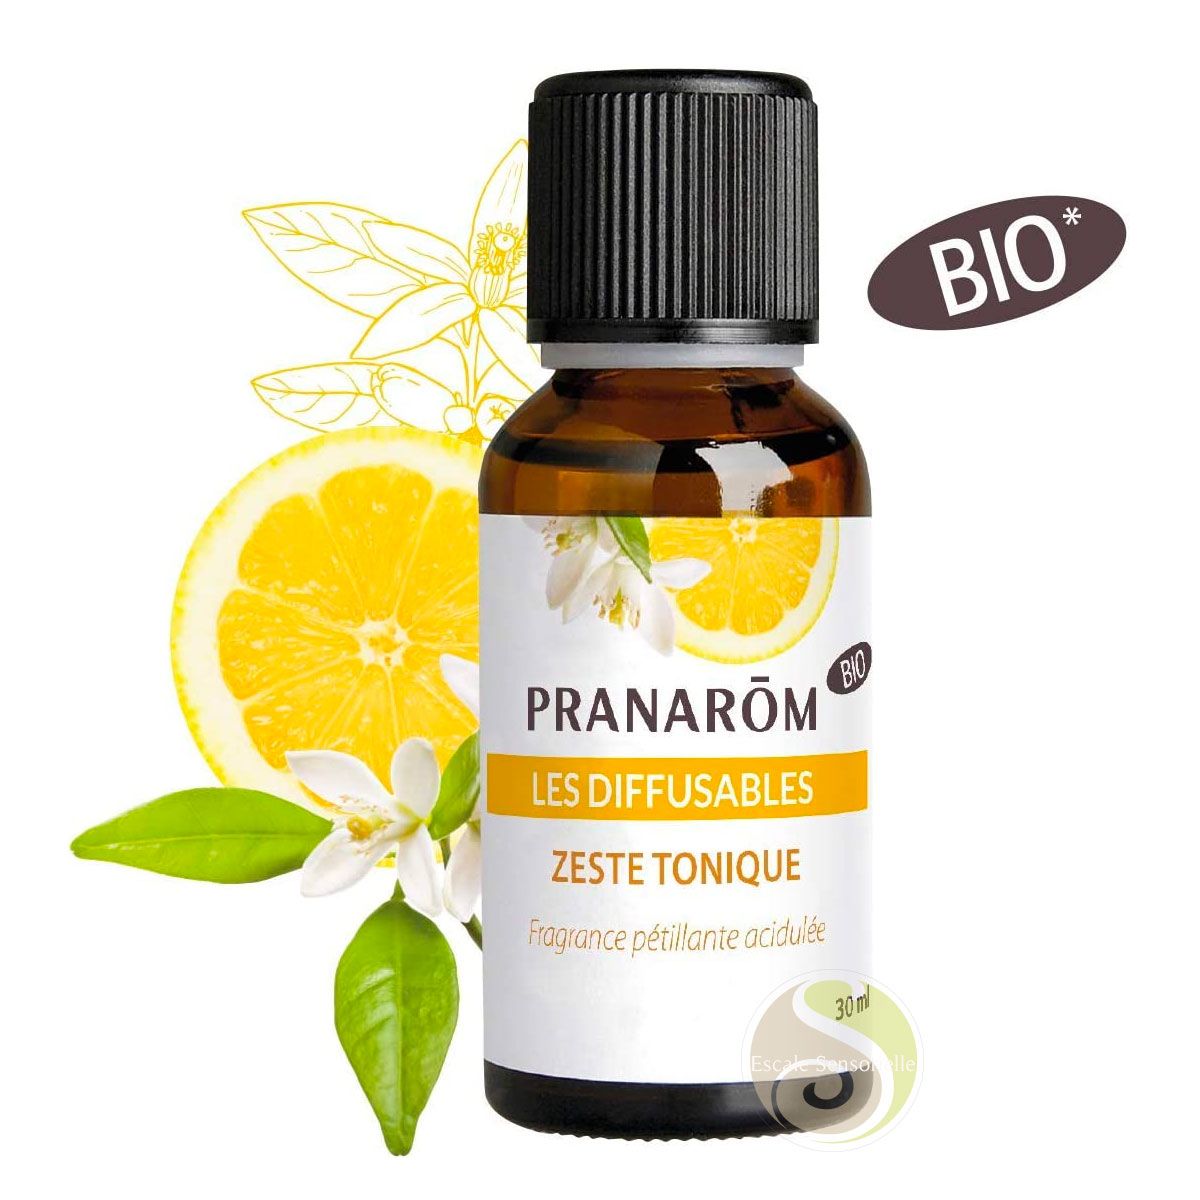 Zeste tonique Pranarôm citron bergamote synergie diffuseur les Diffusables bio